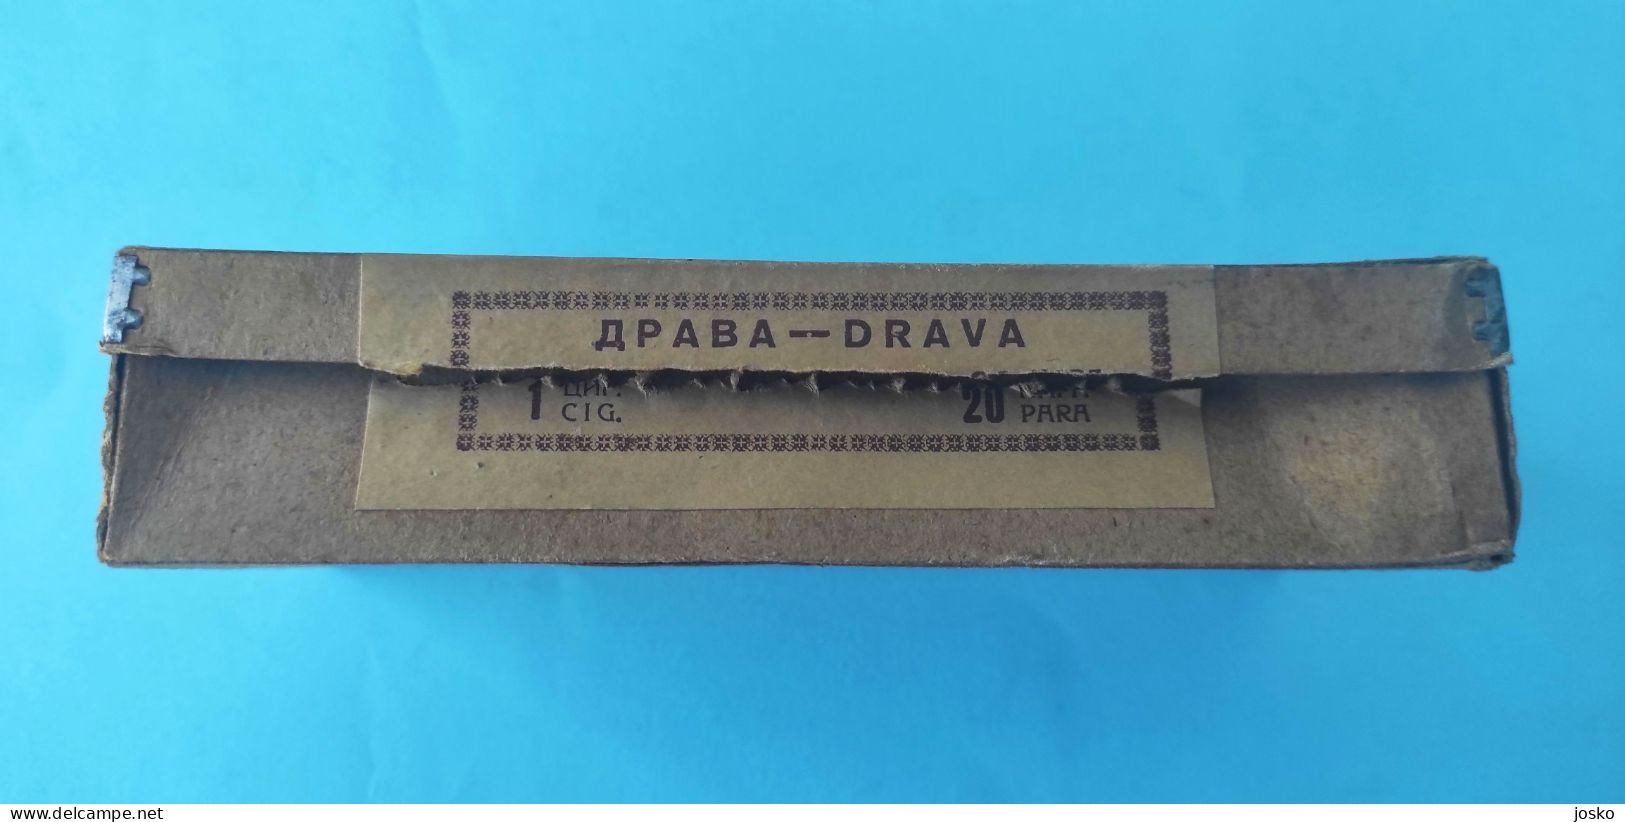 YUGOSLAVIA KINGDOM Antique Cardboard Box For 100. Cigarettes Drava * Cigarette Tobacco Zigaretten Jugoslavia Jugoslawien - Boites à Tabac Vides